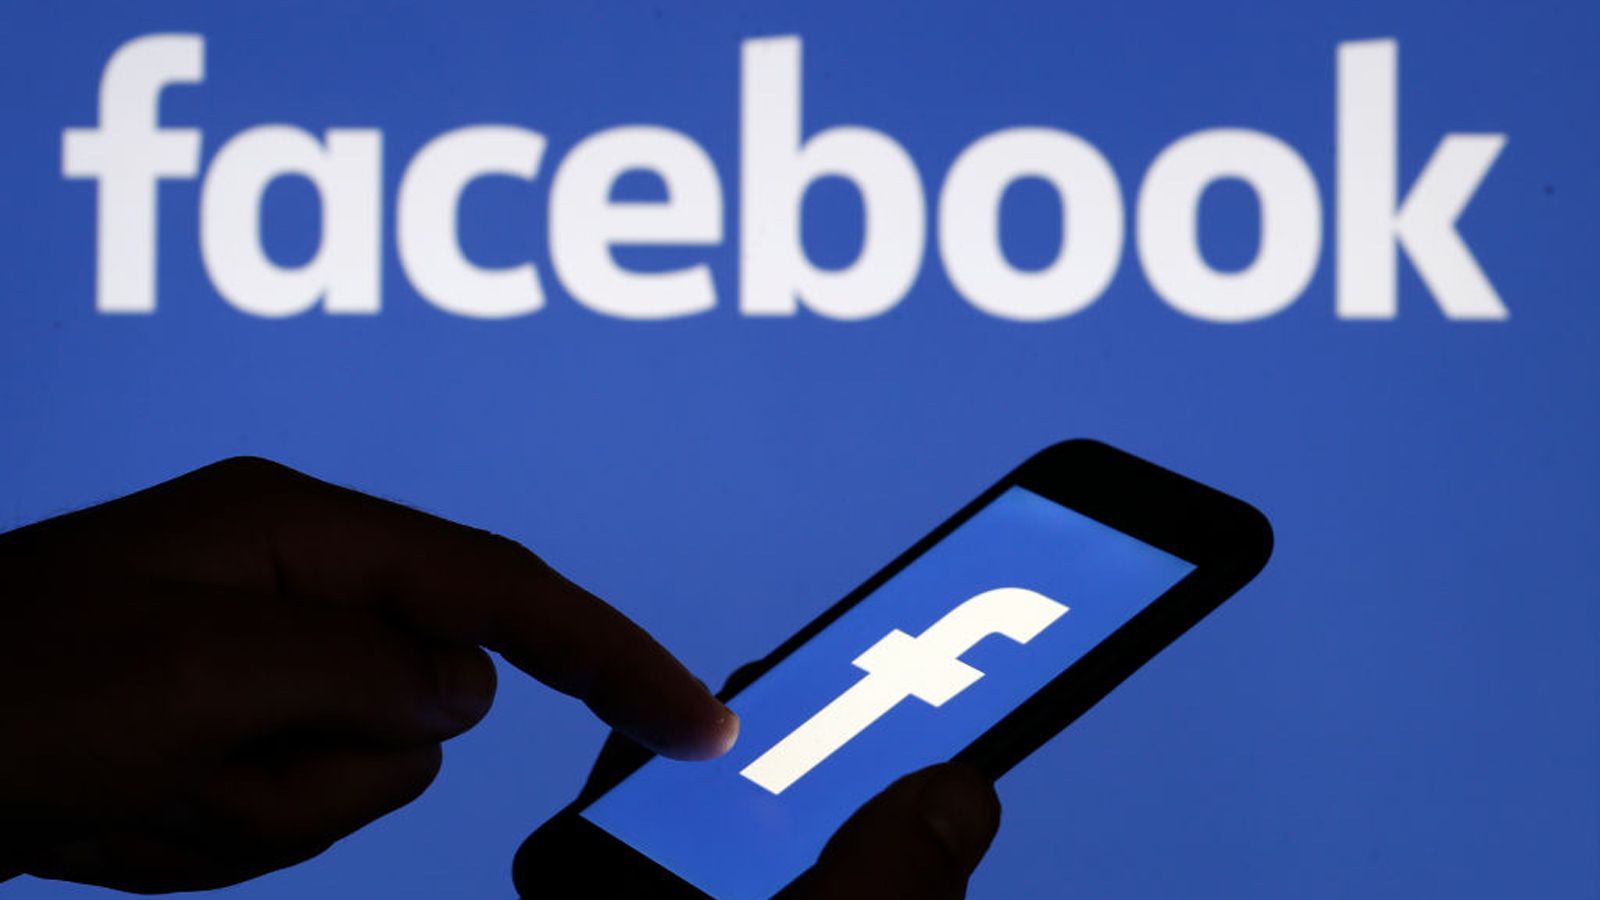 Facebook 利用者24億人を超えた スゴい仕組み インターネット 東洋経済オンライン 社会をよくする経済ニュース